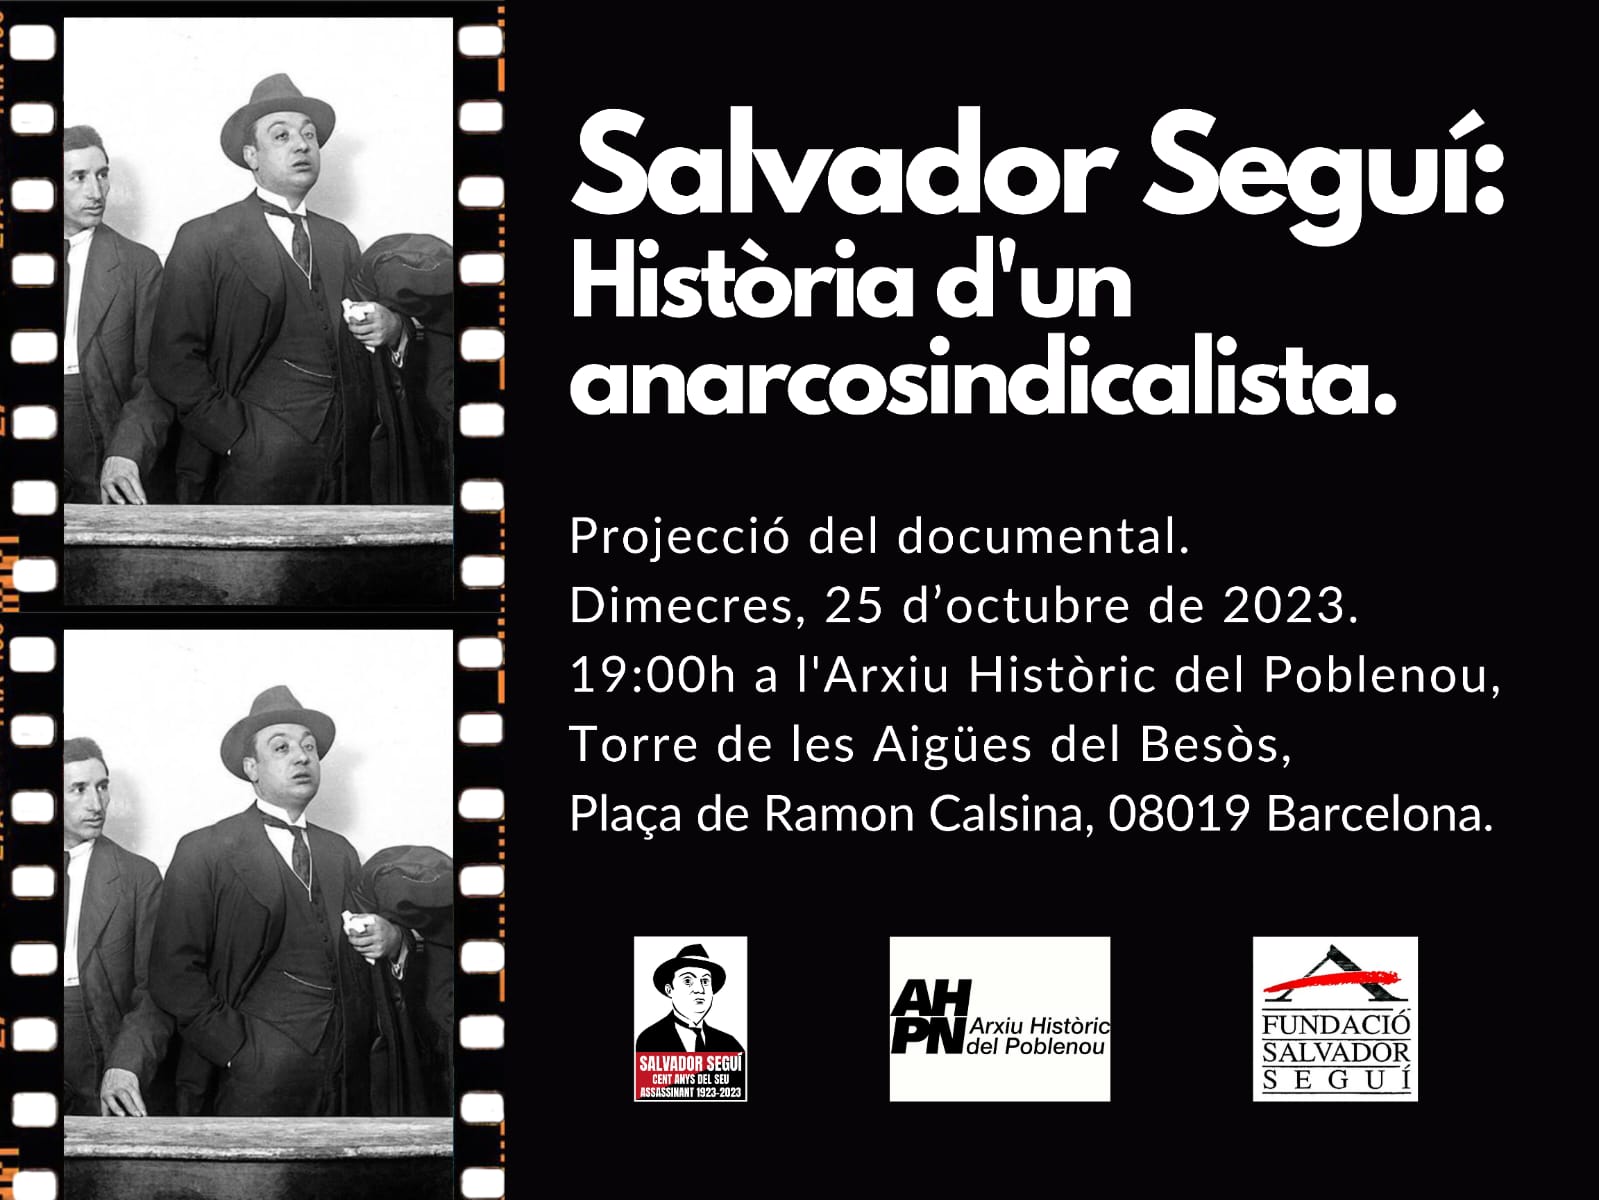 Salvador Seguí Arxiu Històric